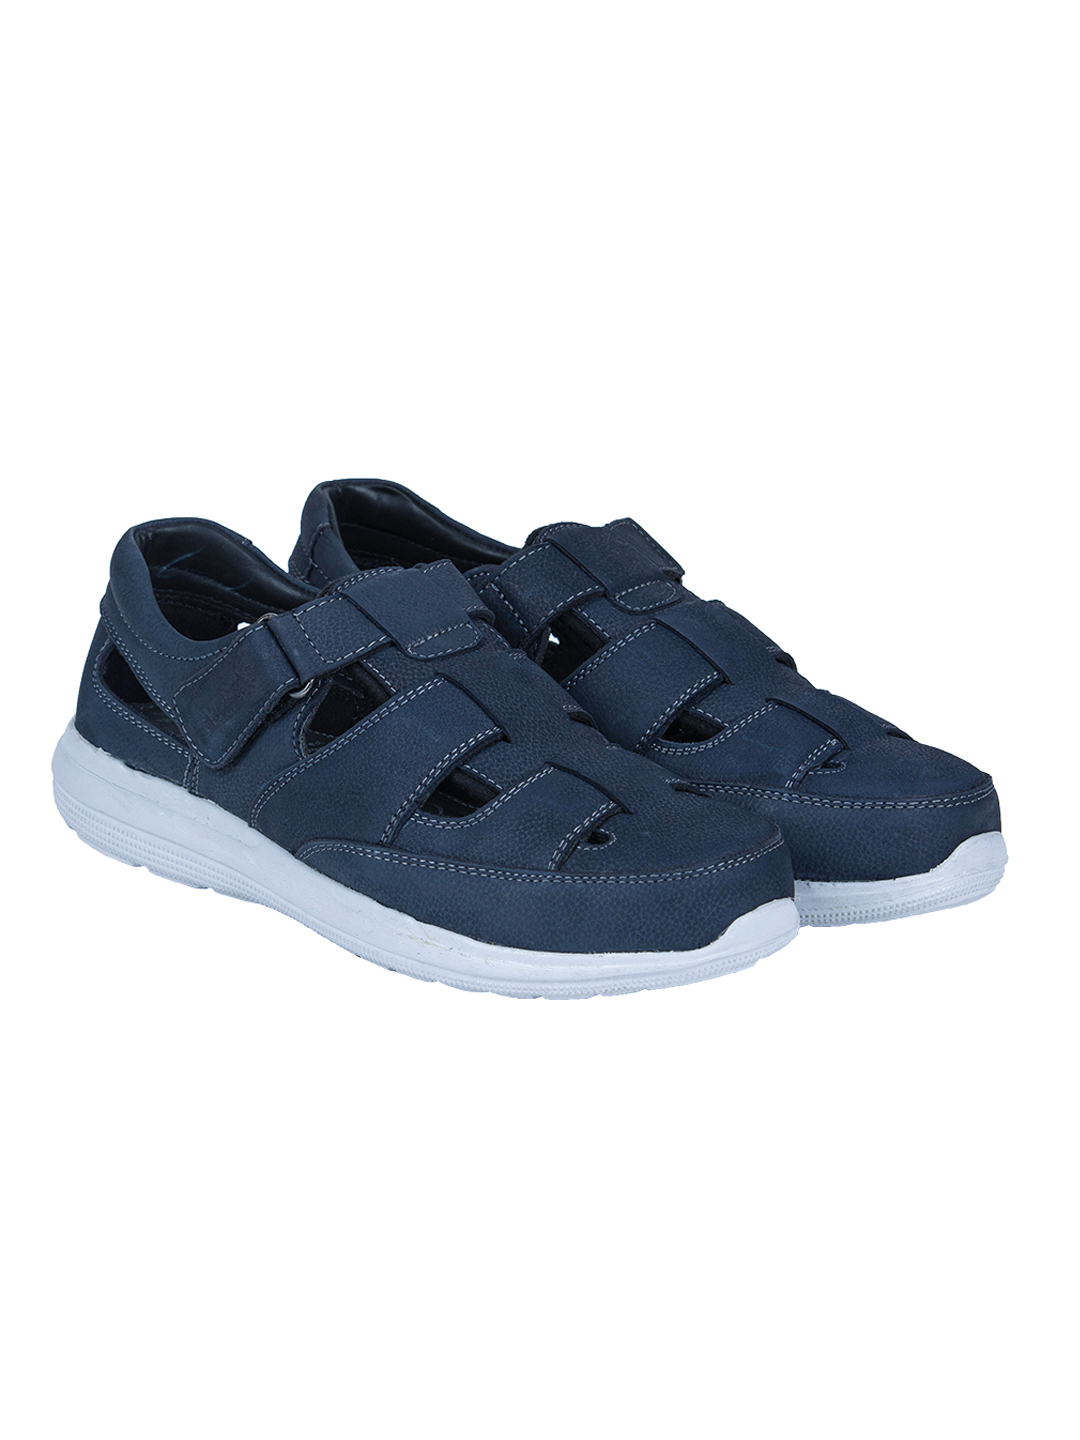 Buy Von Wellx Germany Comfort Blue James Sandals Online in Salalah